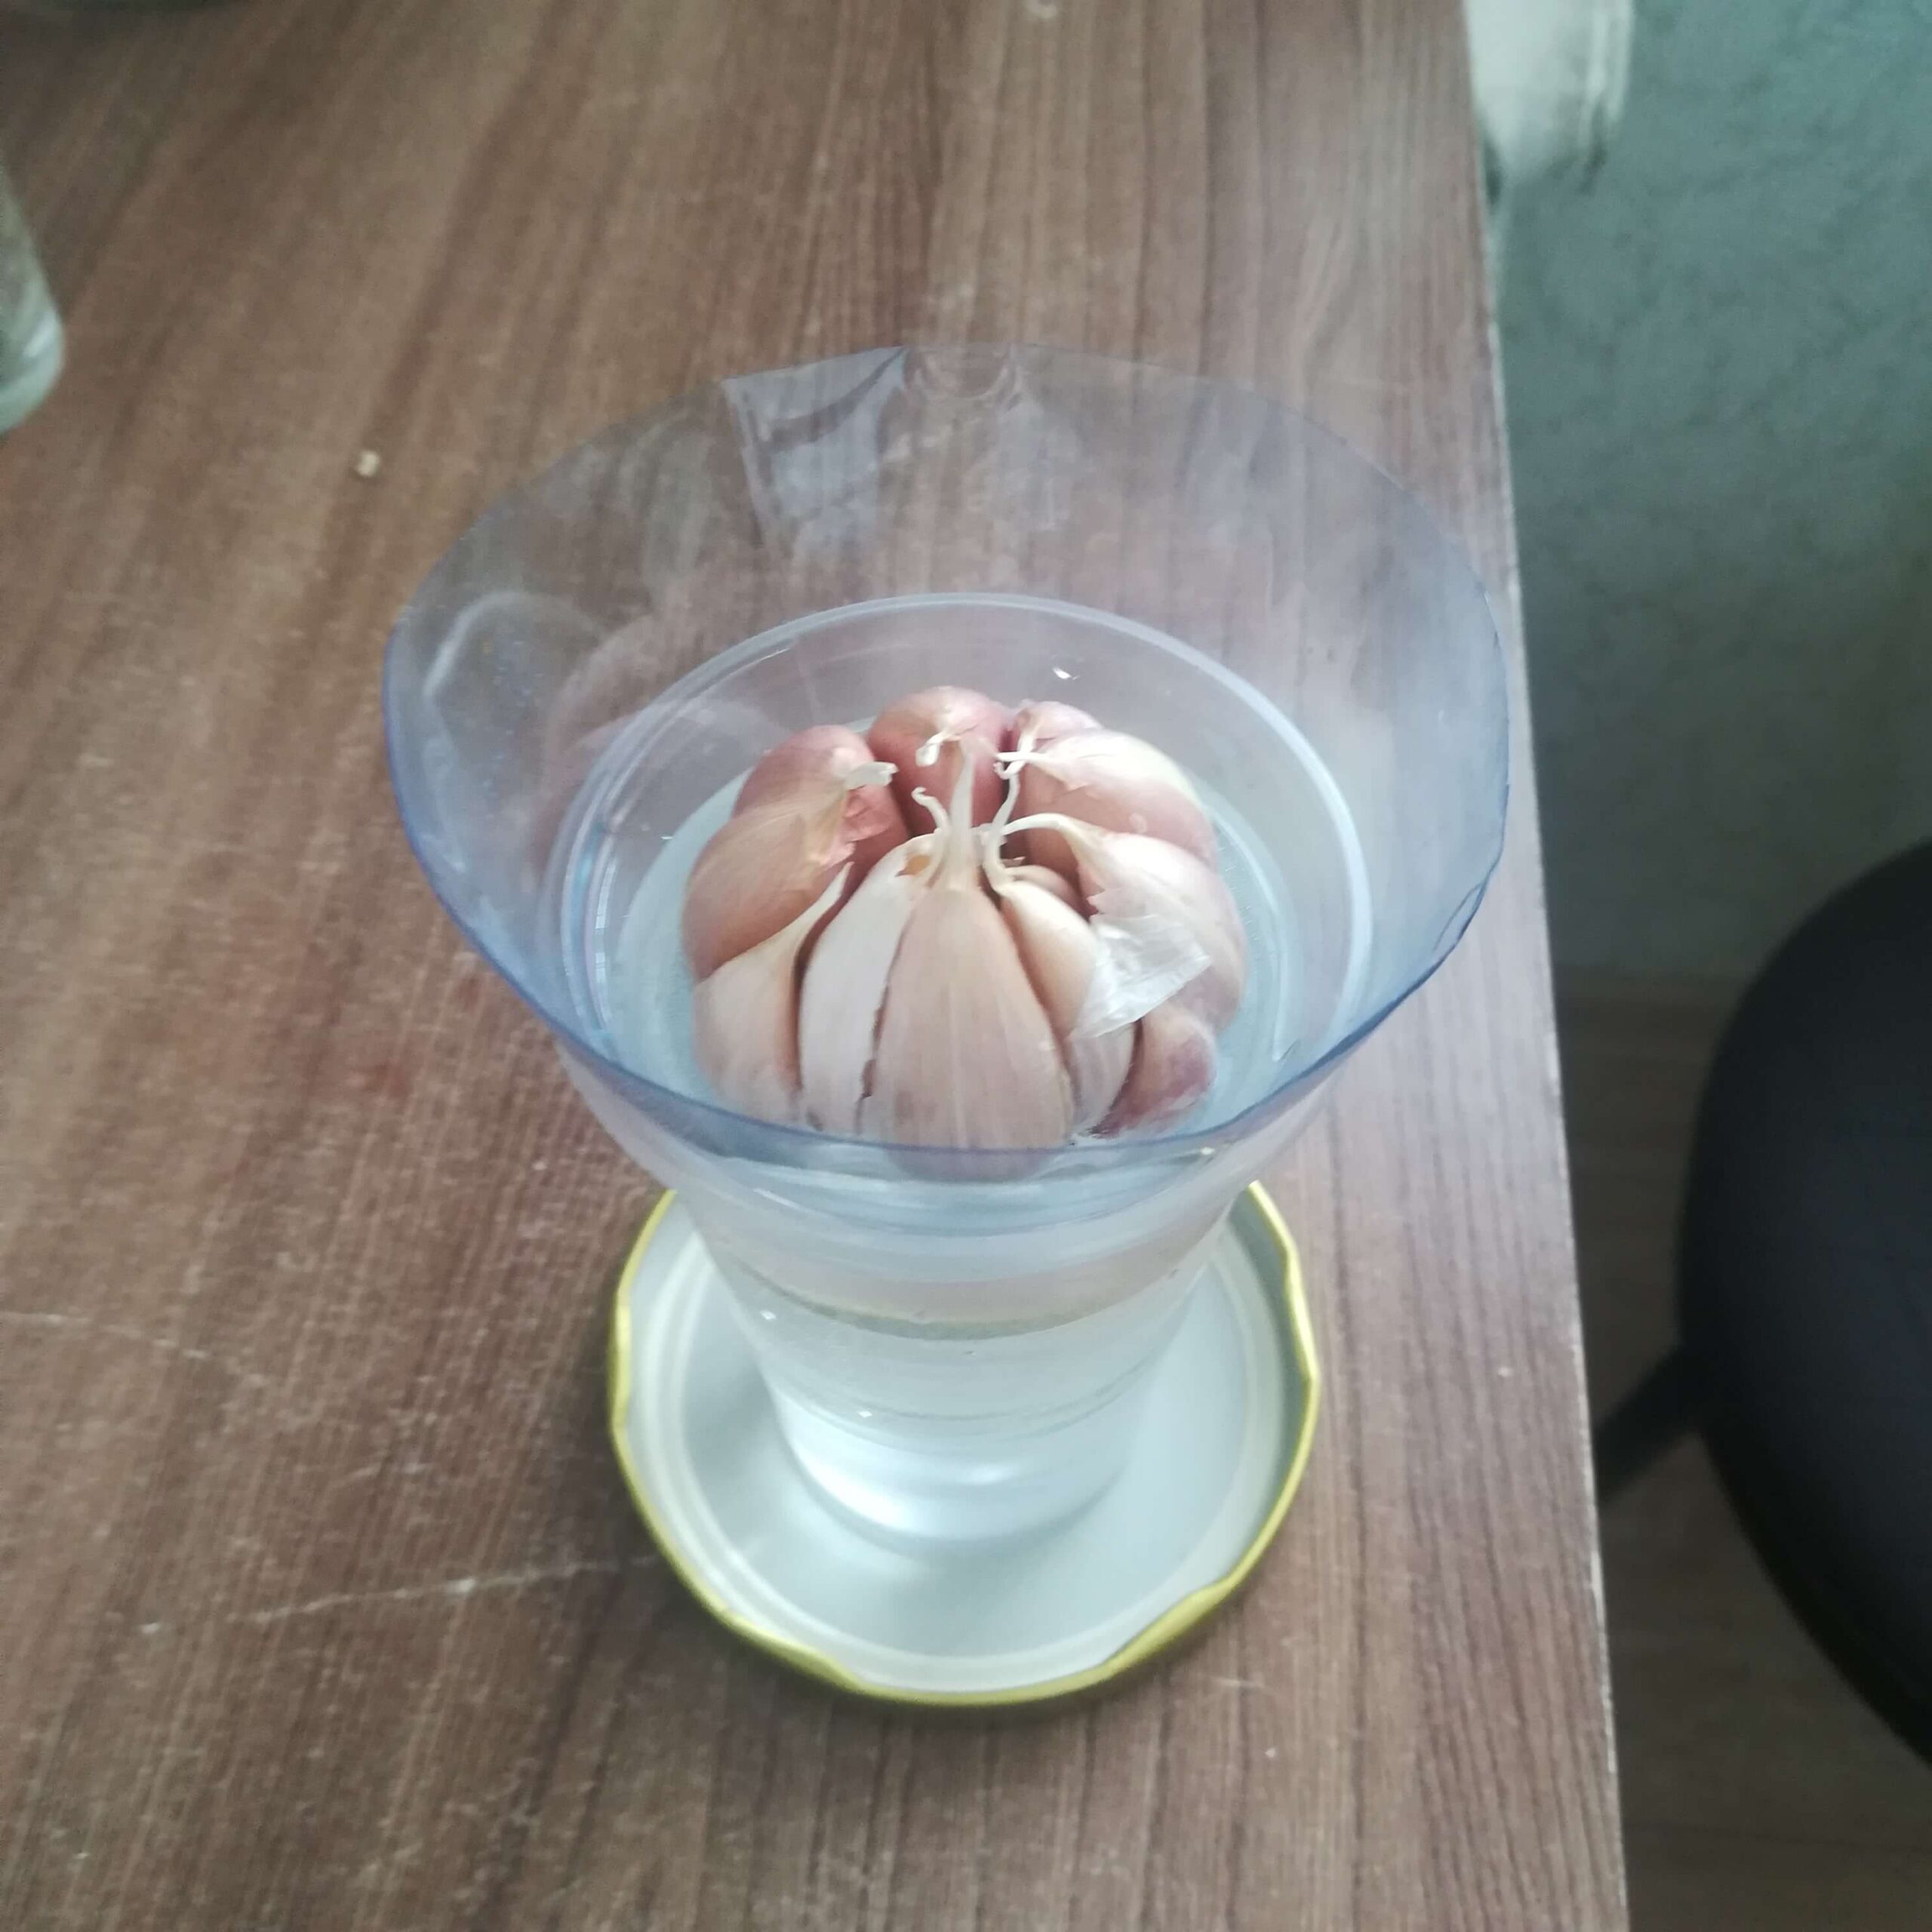 День 1: обычная головка чеснока, купленная в продуктовом магазине, помещена в прозрачный стакан с водой.